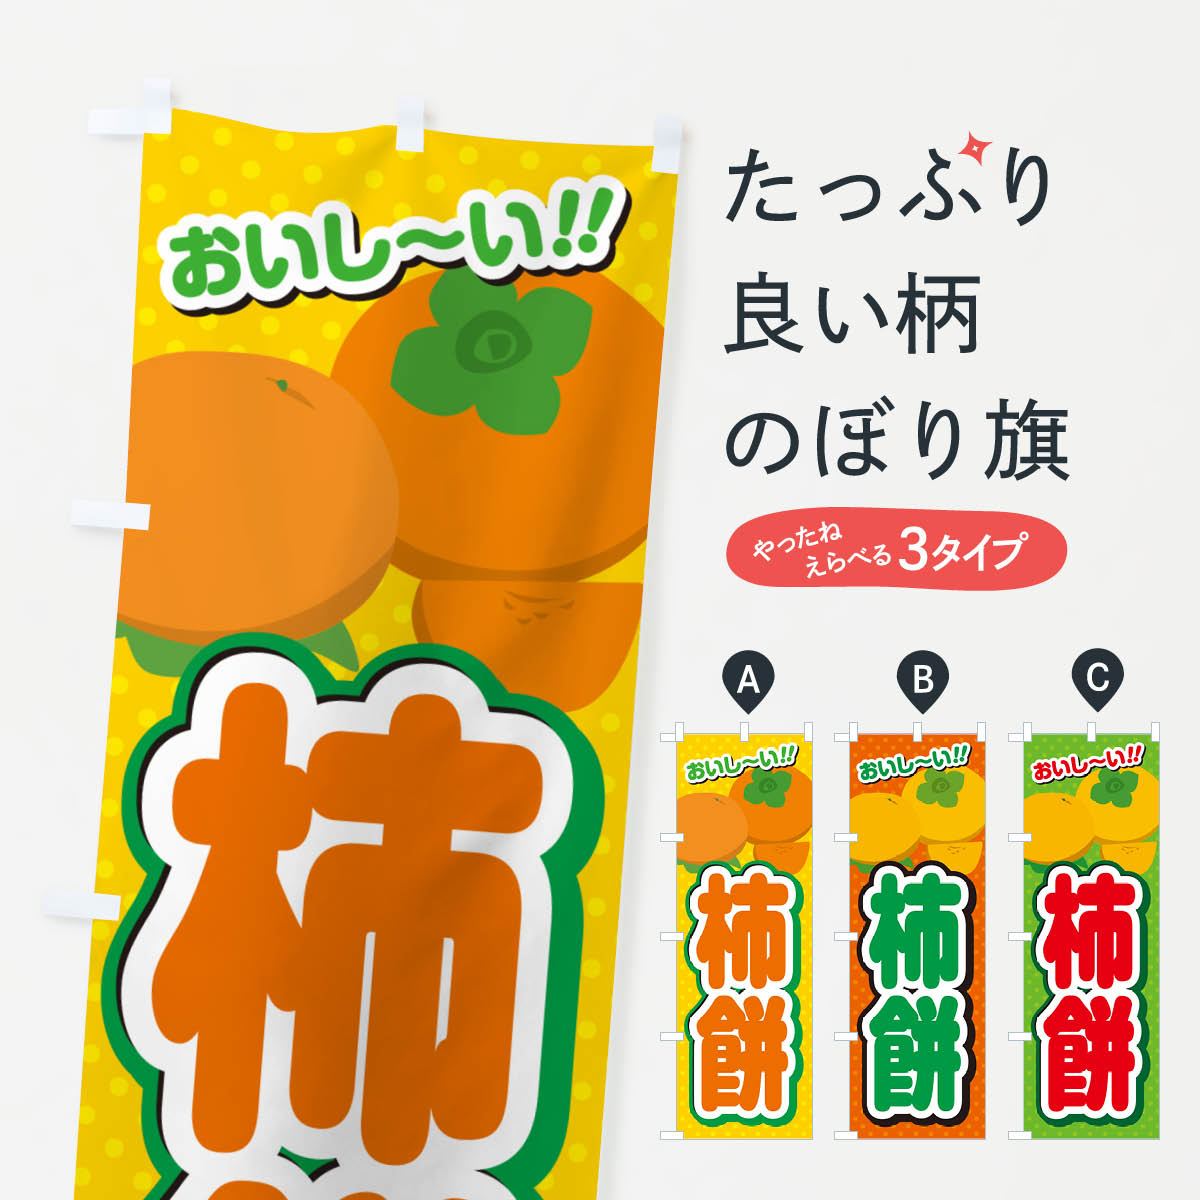 【ポスト便 送料360】 のぼり旗 柿餅